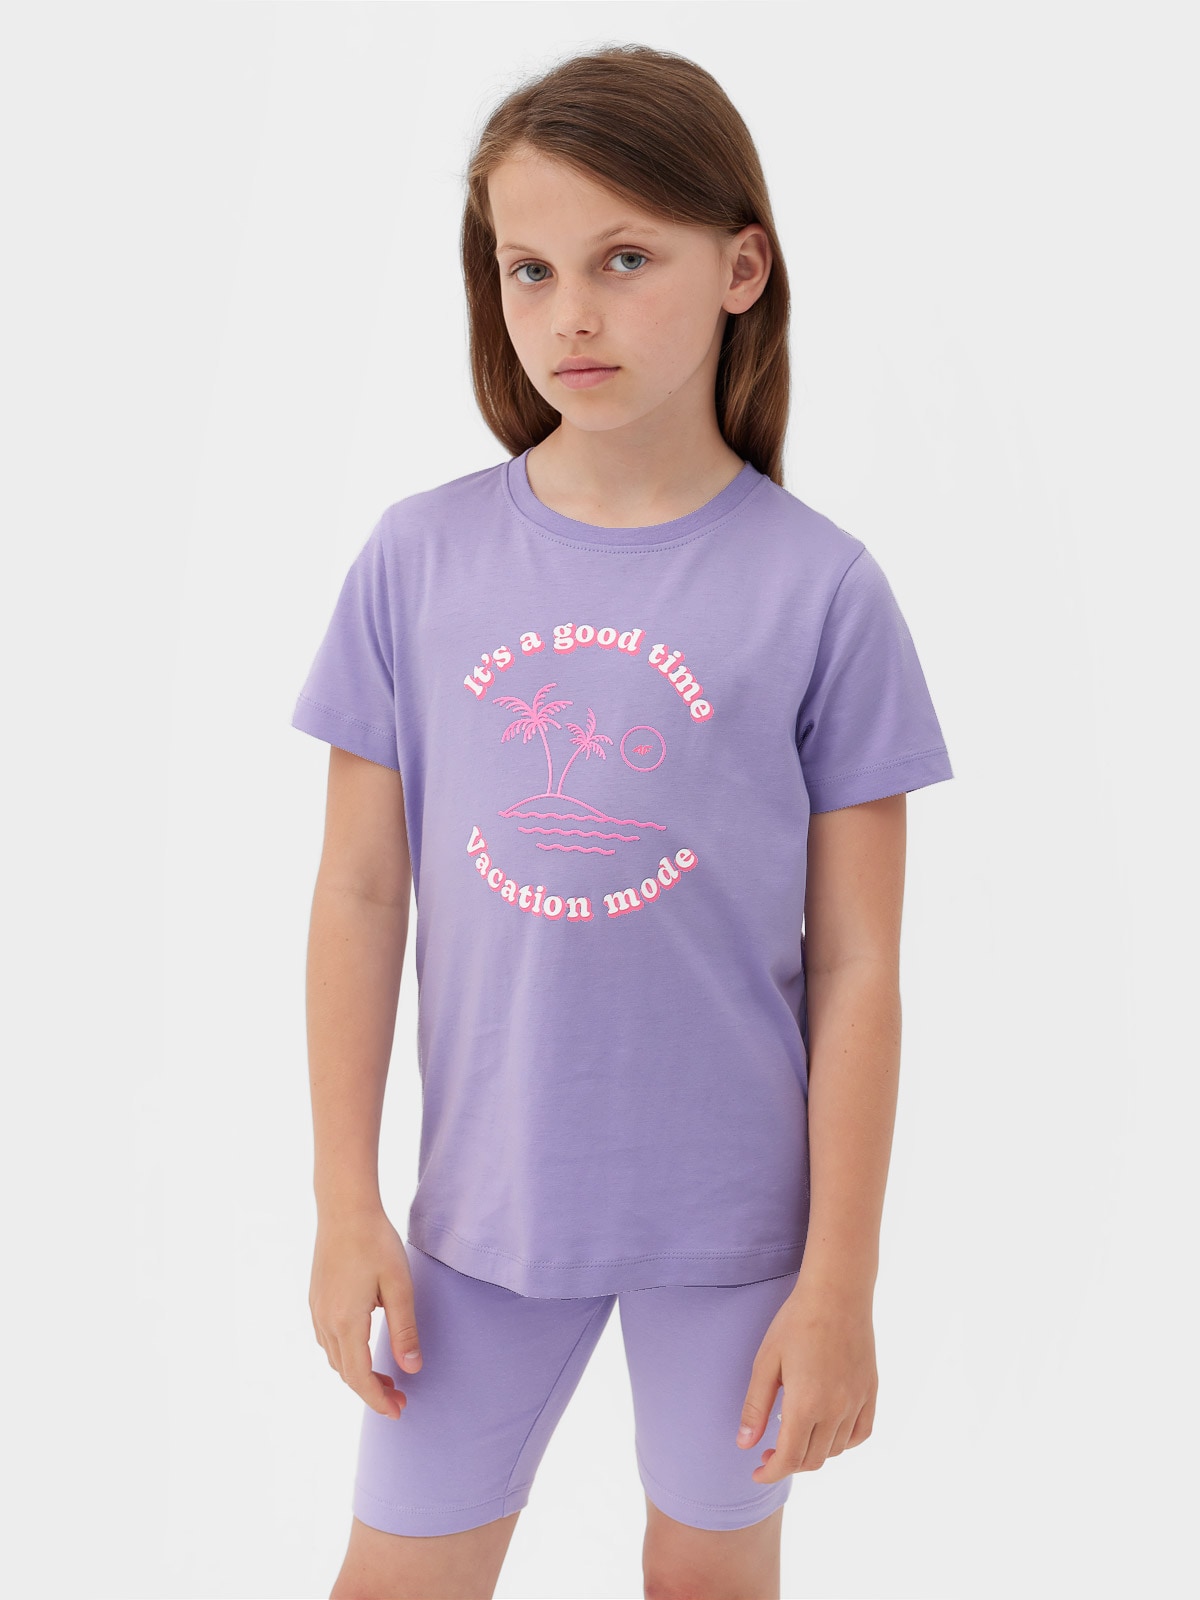 Dievčenské tričko s potlačou - fialové